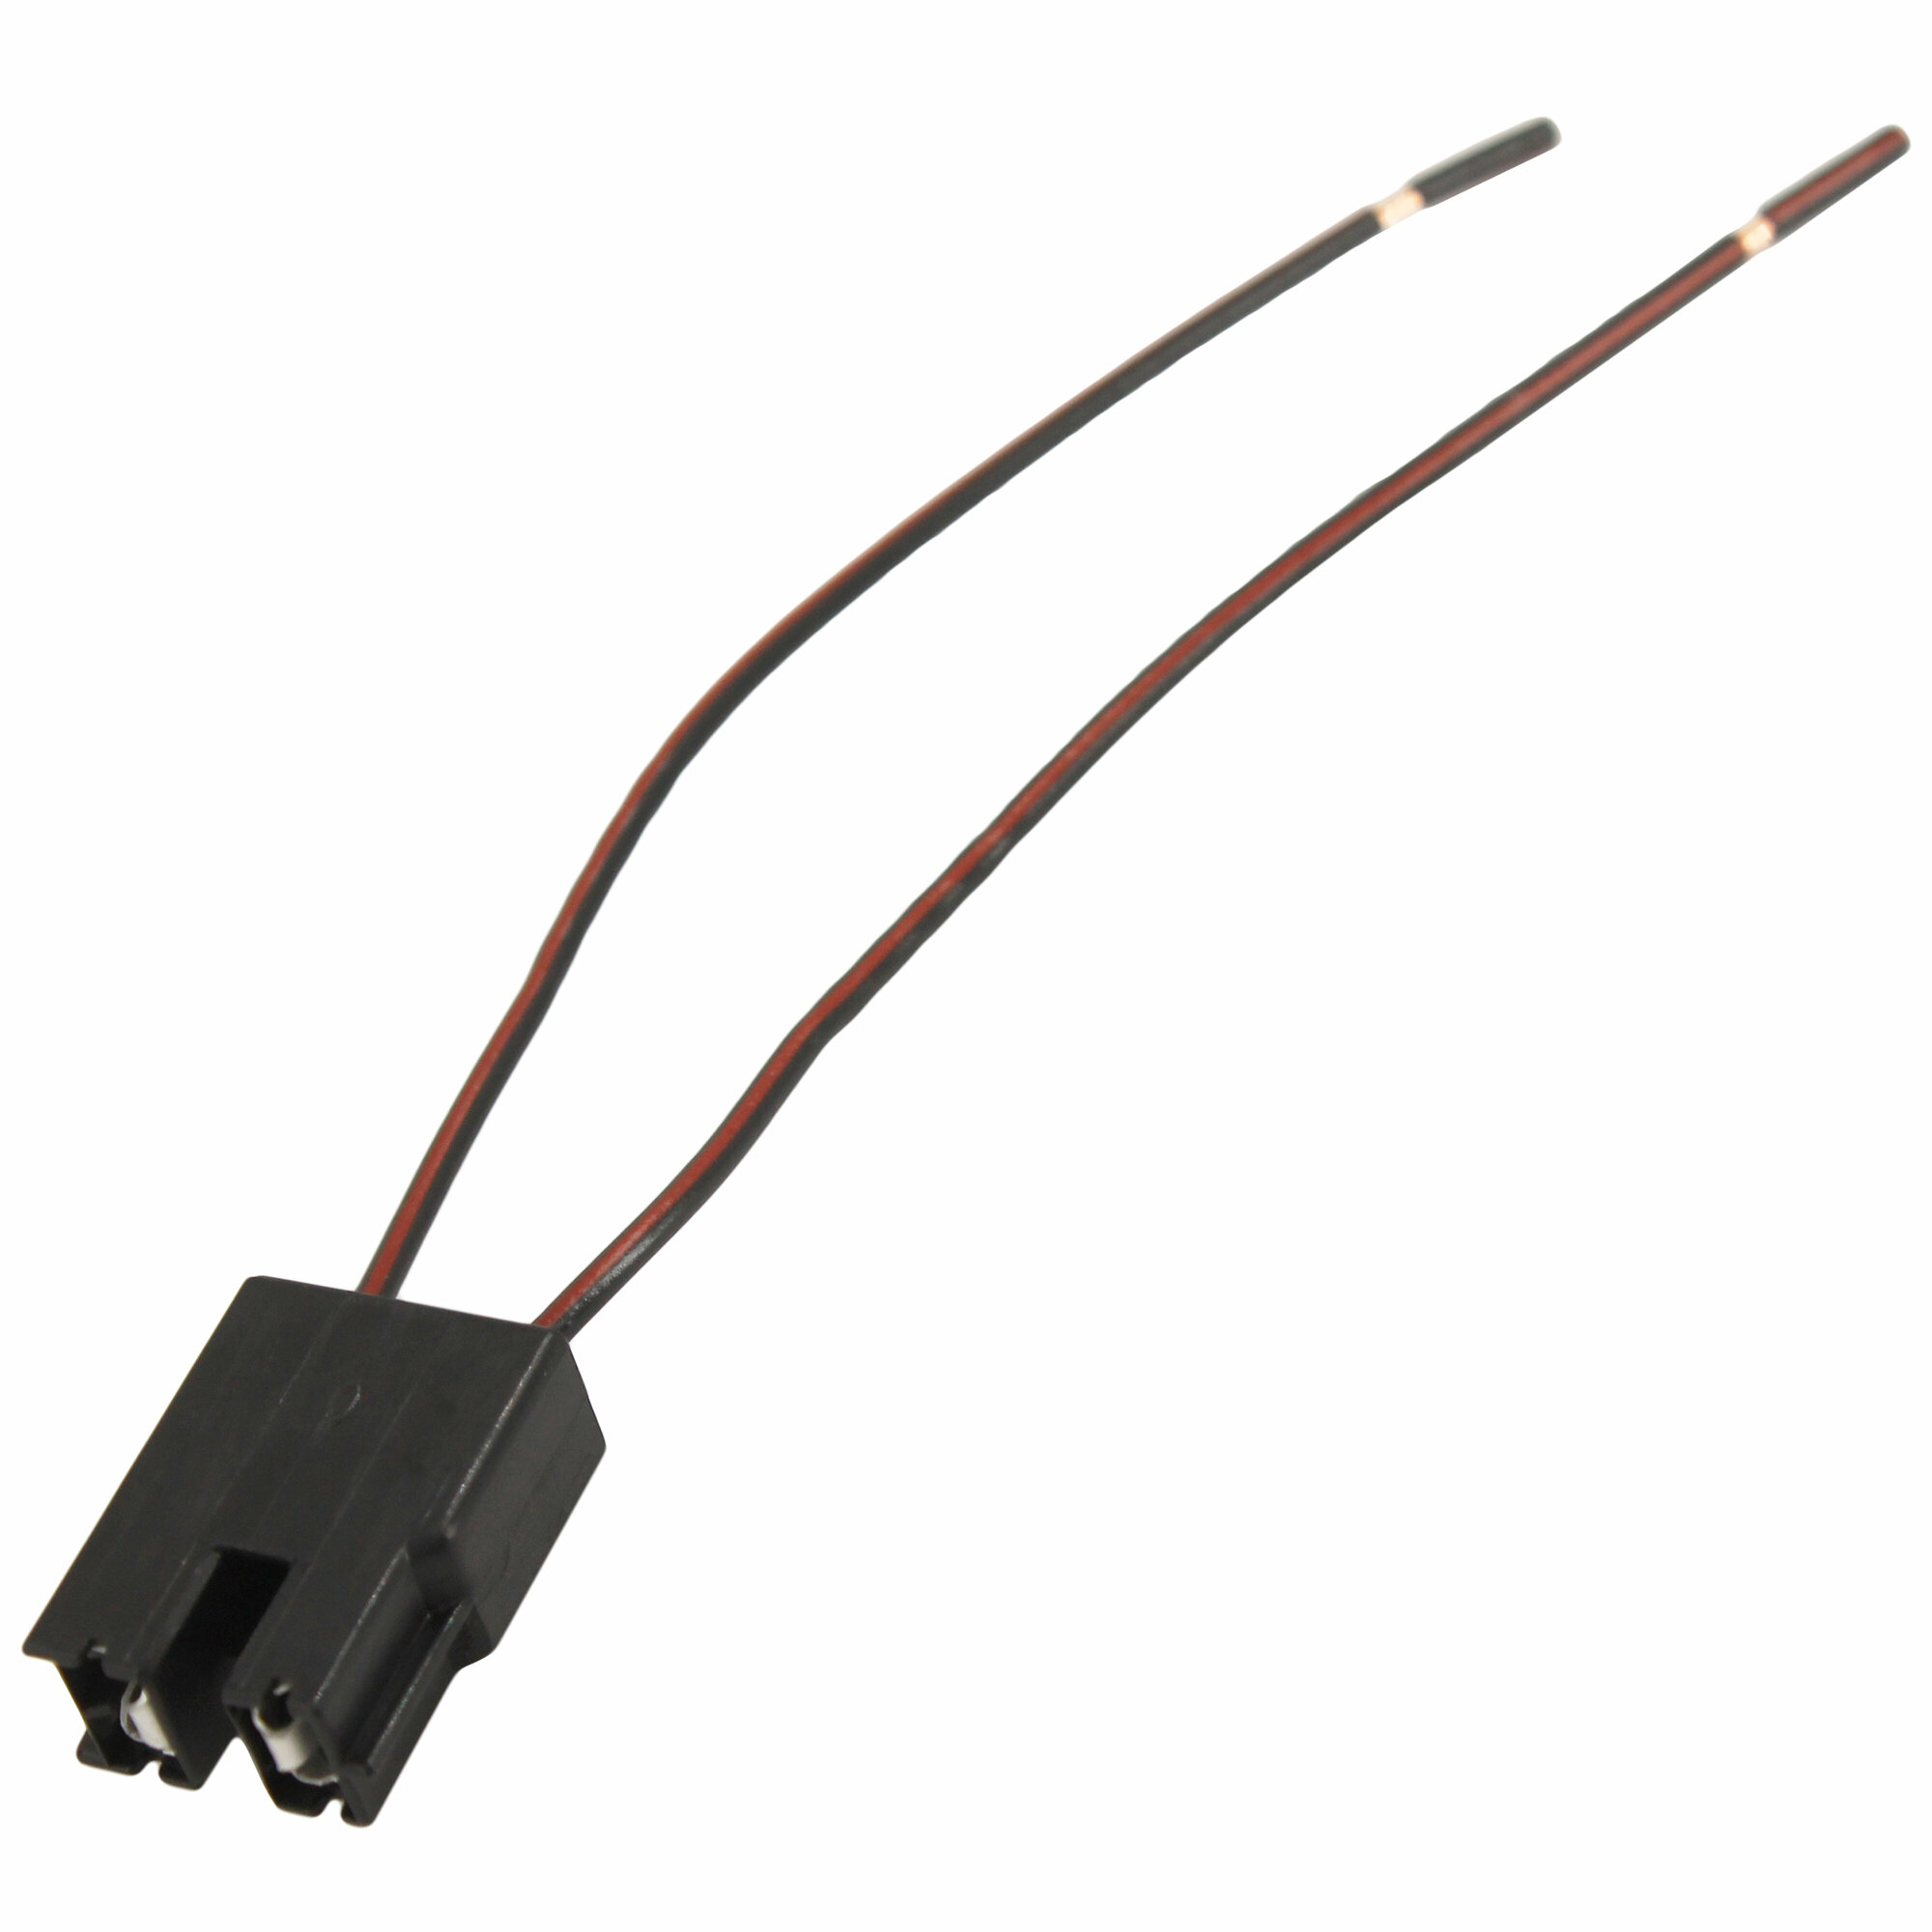 Разъем 926521 2-х контактный прямой для фары с лампой H7, с проводами